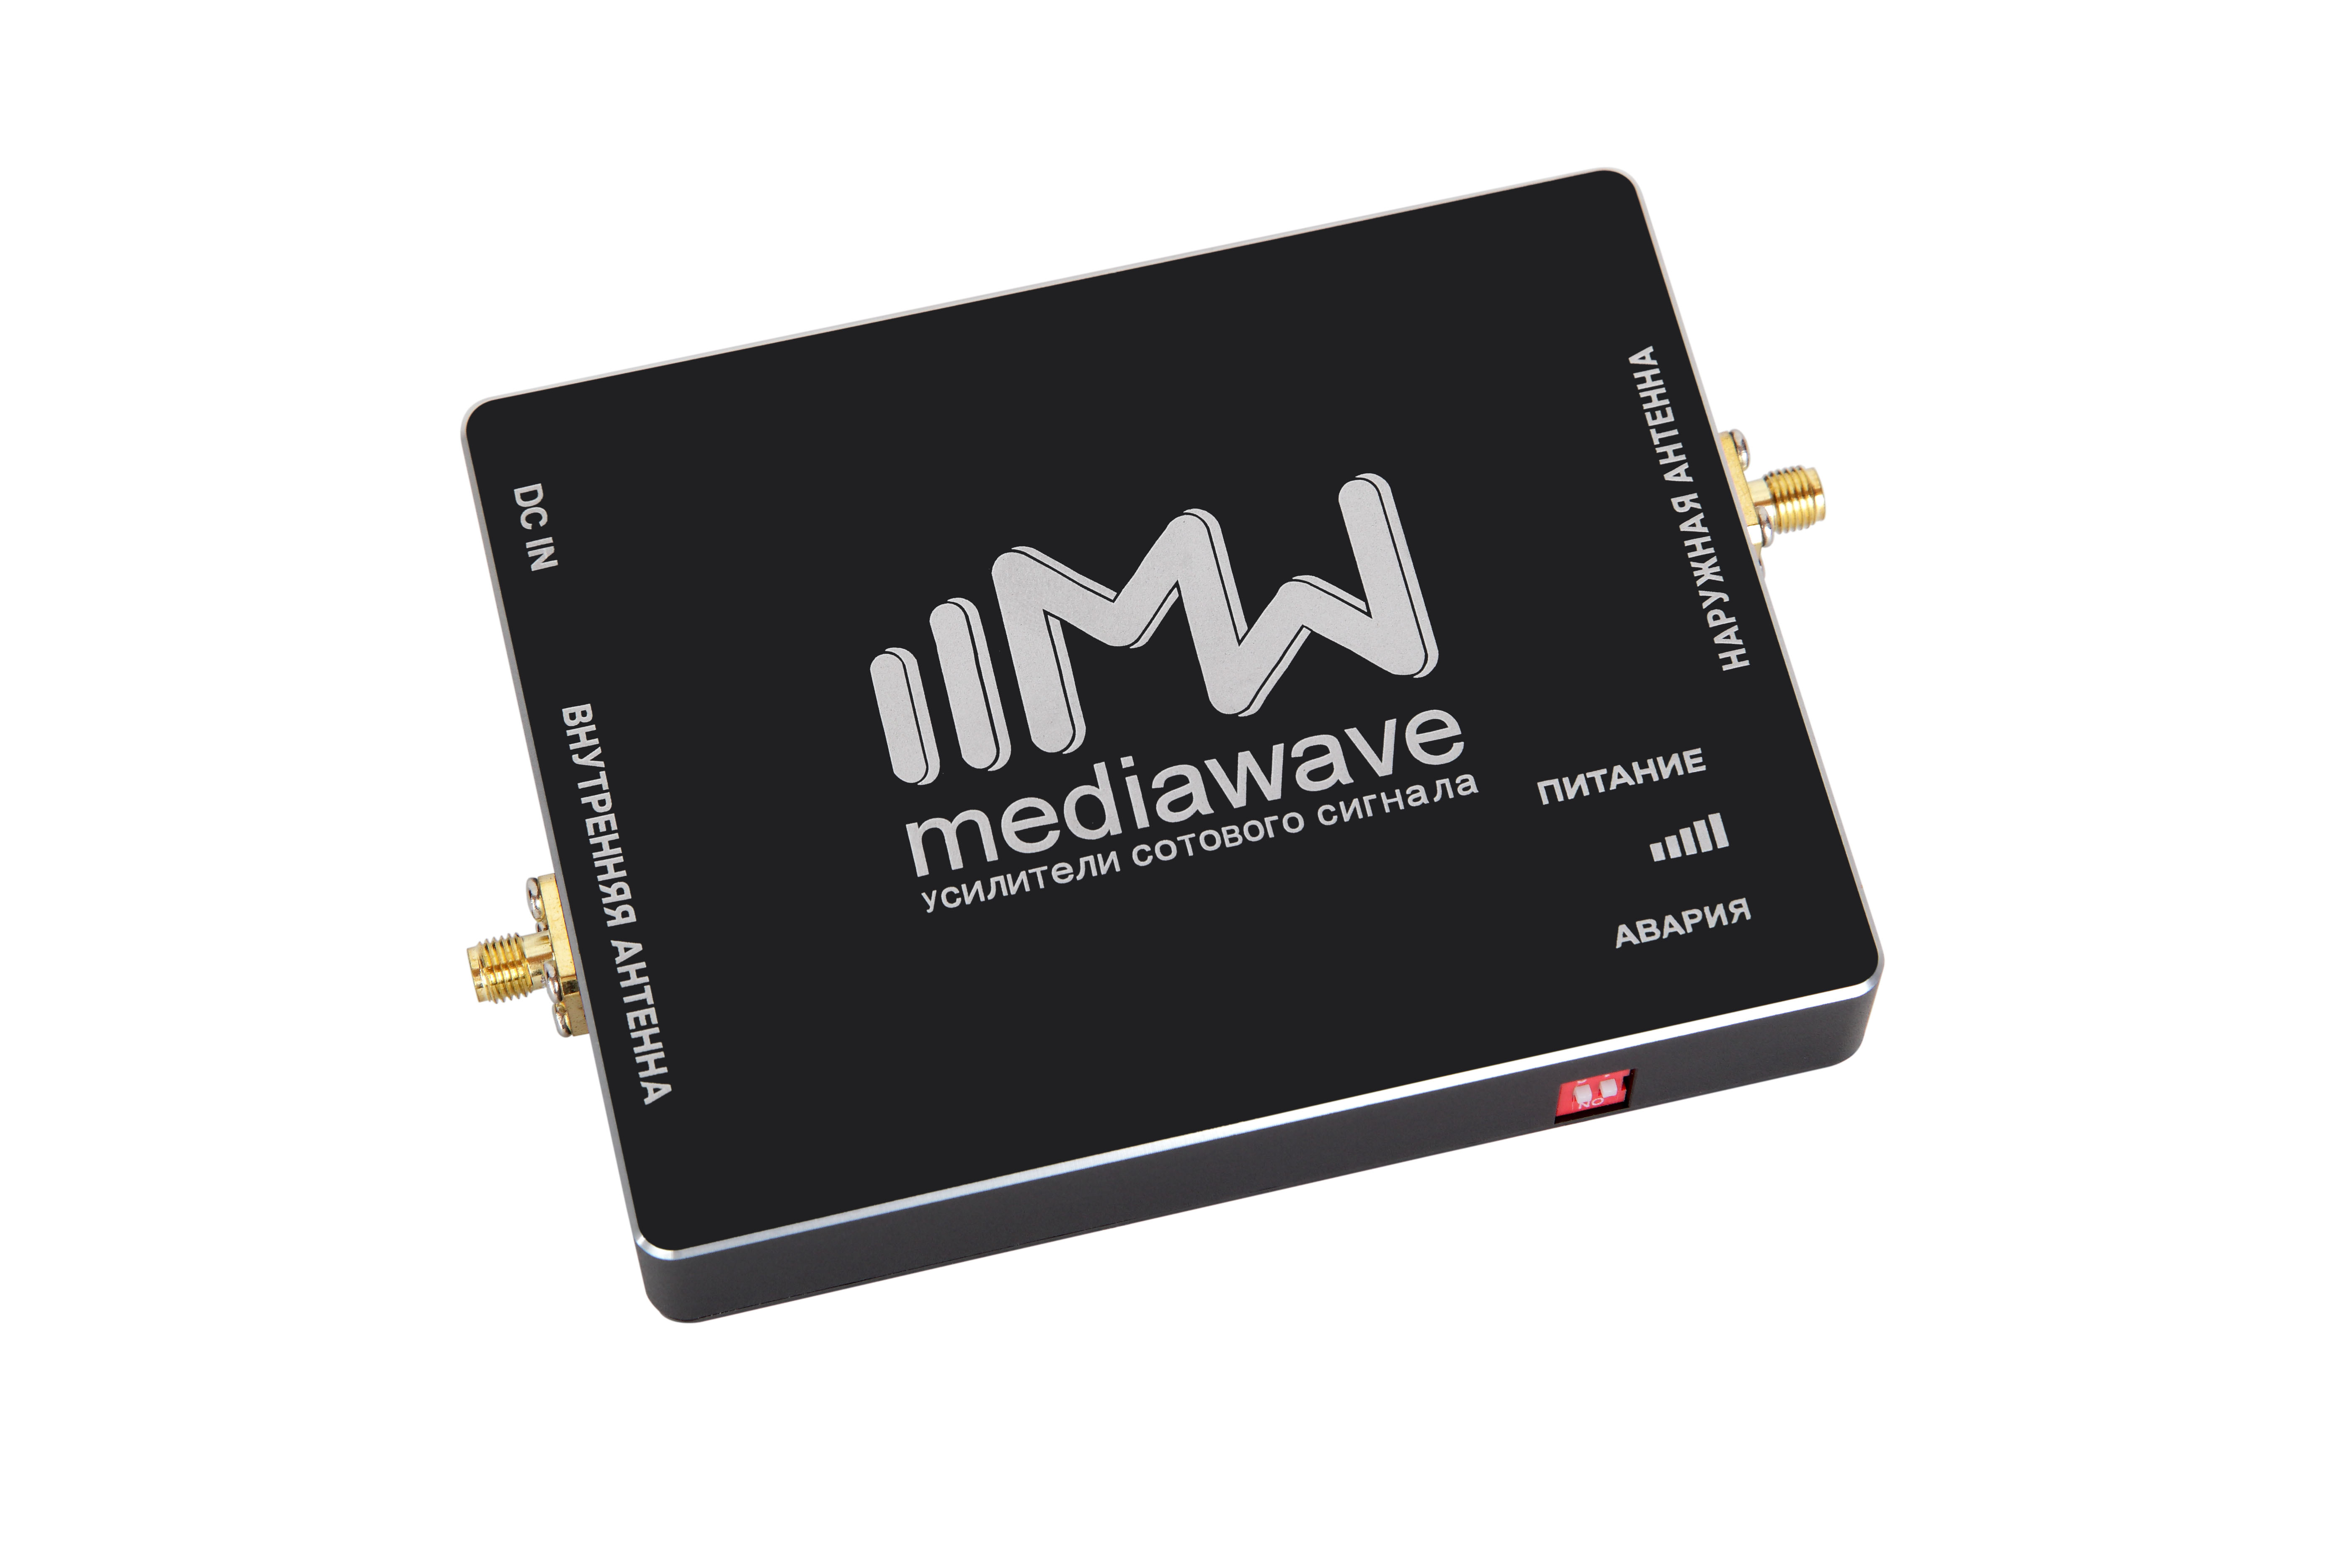 MWK-9-S: комплект усиления сотового сигнала и интернета EGSM-900, 900Мгц (GSM/3G-UMTS), 65дб/30мВт,